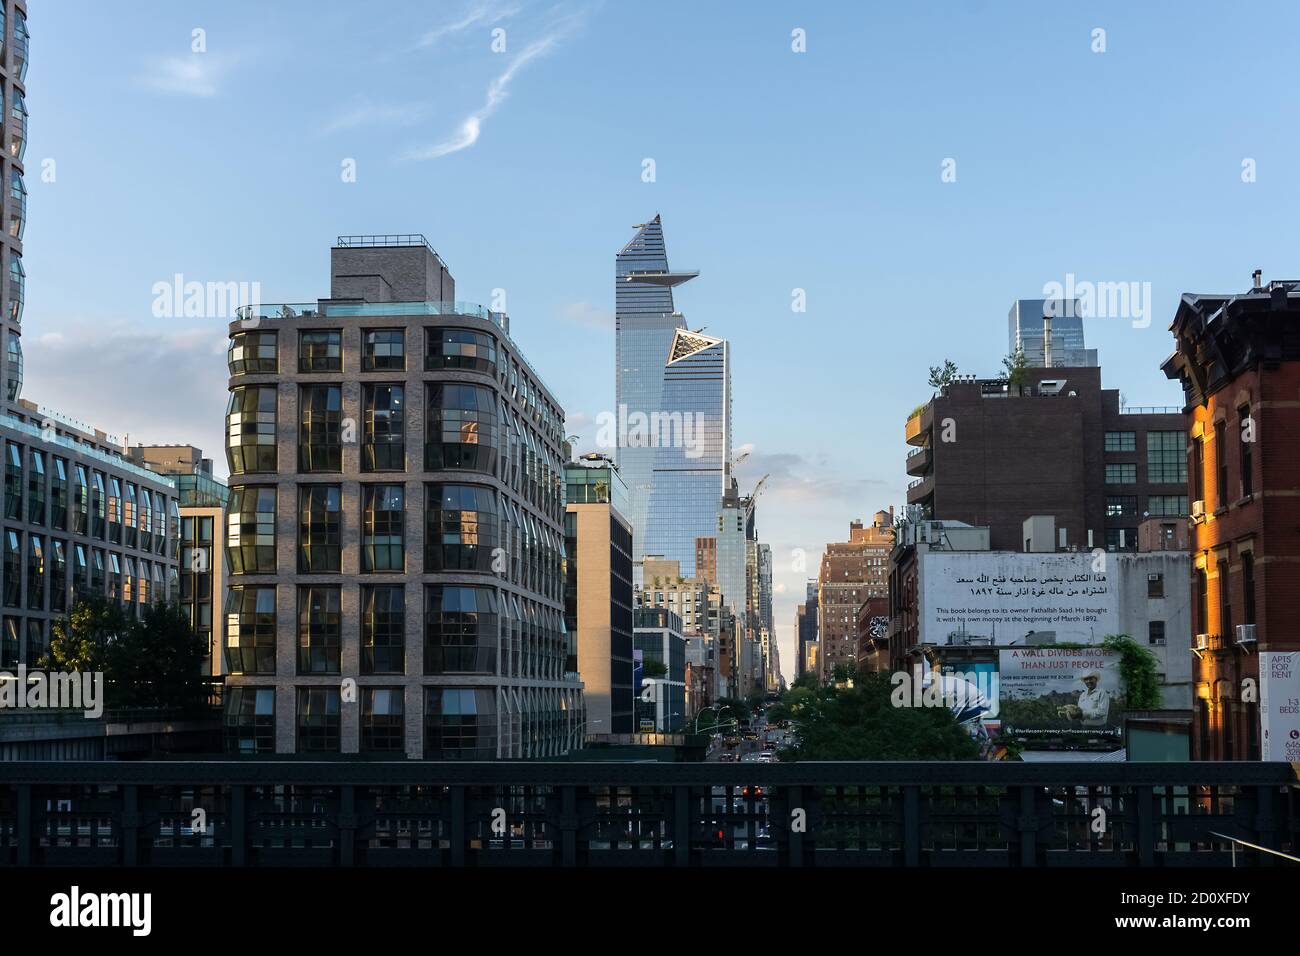 New York / USA - juillet 28 2020: Une vue de High Line sur la 18e rue et les bâtiments autour de Chelsea, Manhattan NYC Banque D'Images